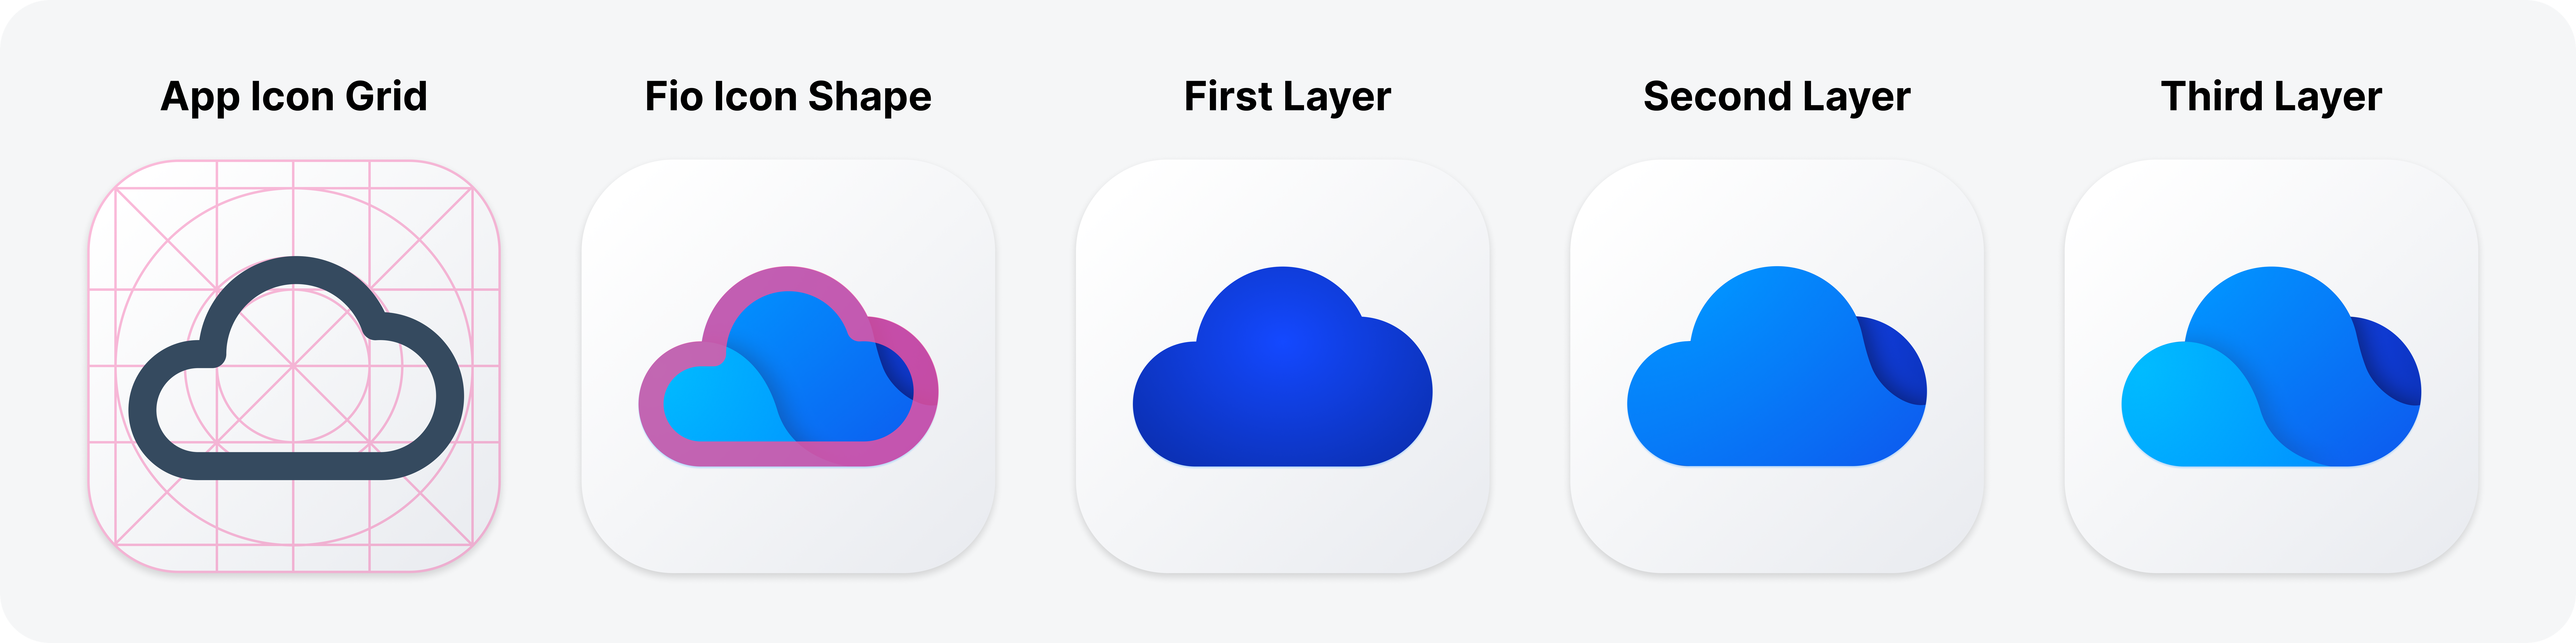 App icon metamorphosis